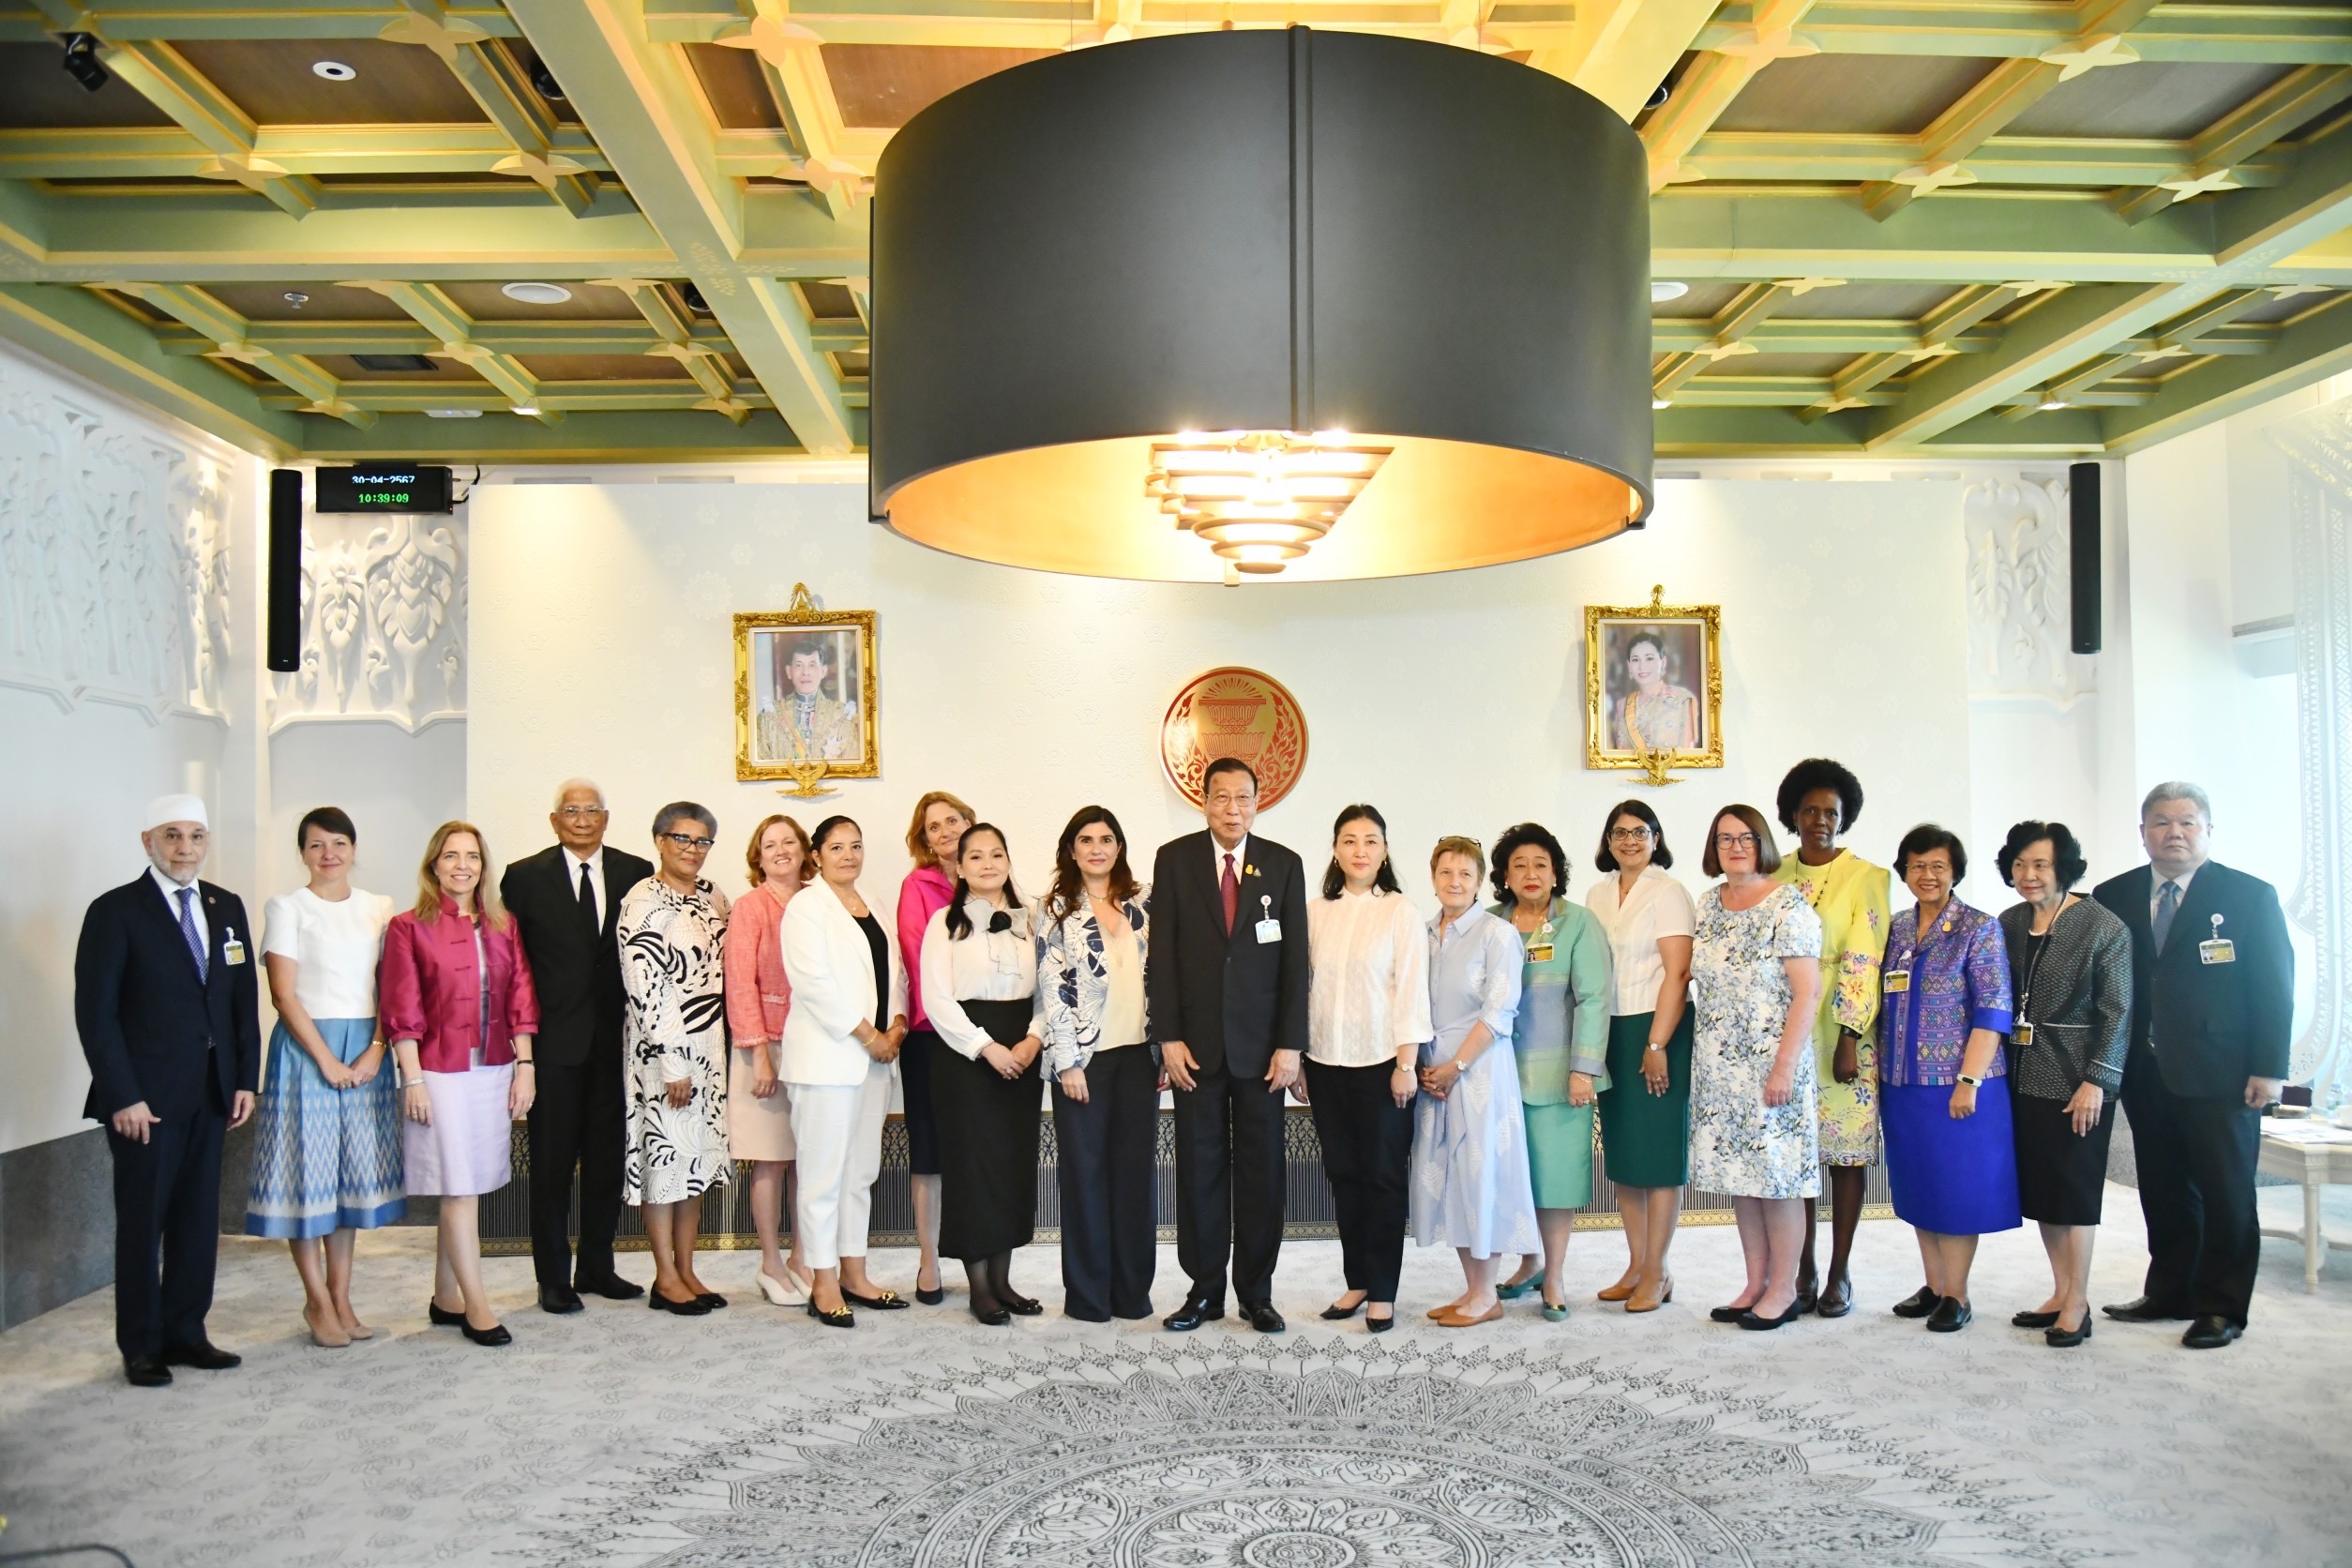 คณะภริยาเอกอัครราชทูตประจำประเทศไทย เยี่ยมชมและศึกษาดูงาน ณ สำนักงานเลขาธิการวุฒิสภา*